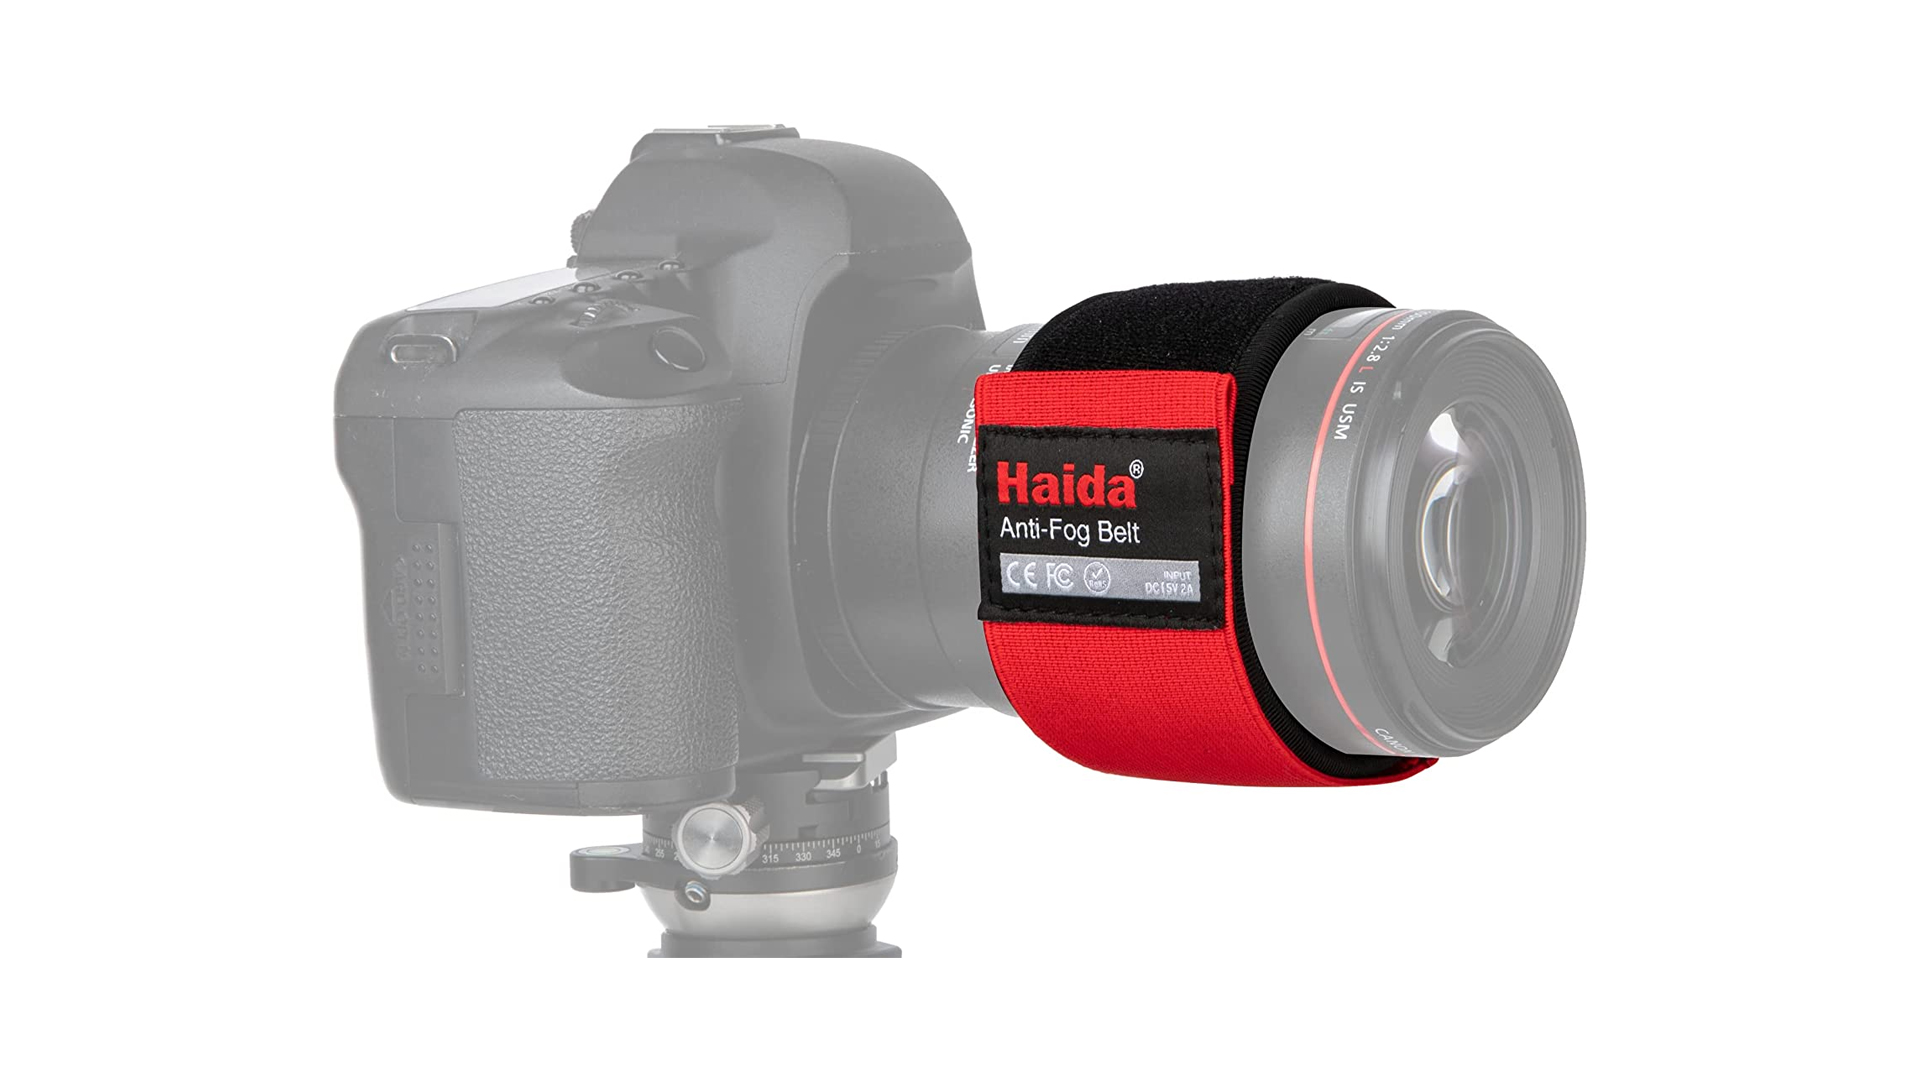 lens heaters: image shows Haida antio-fog lens belt and heater